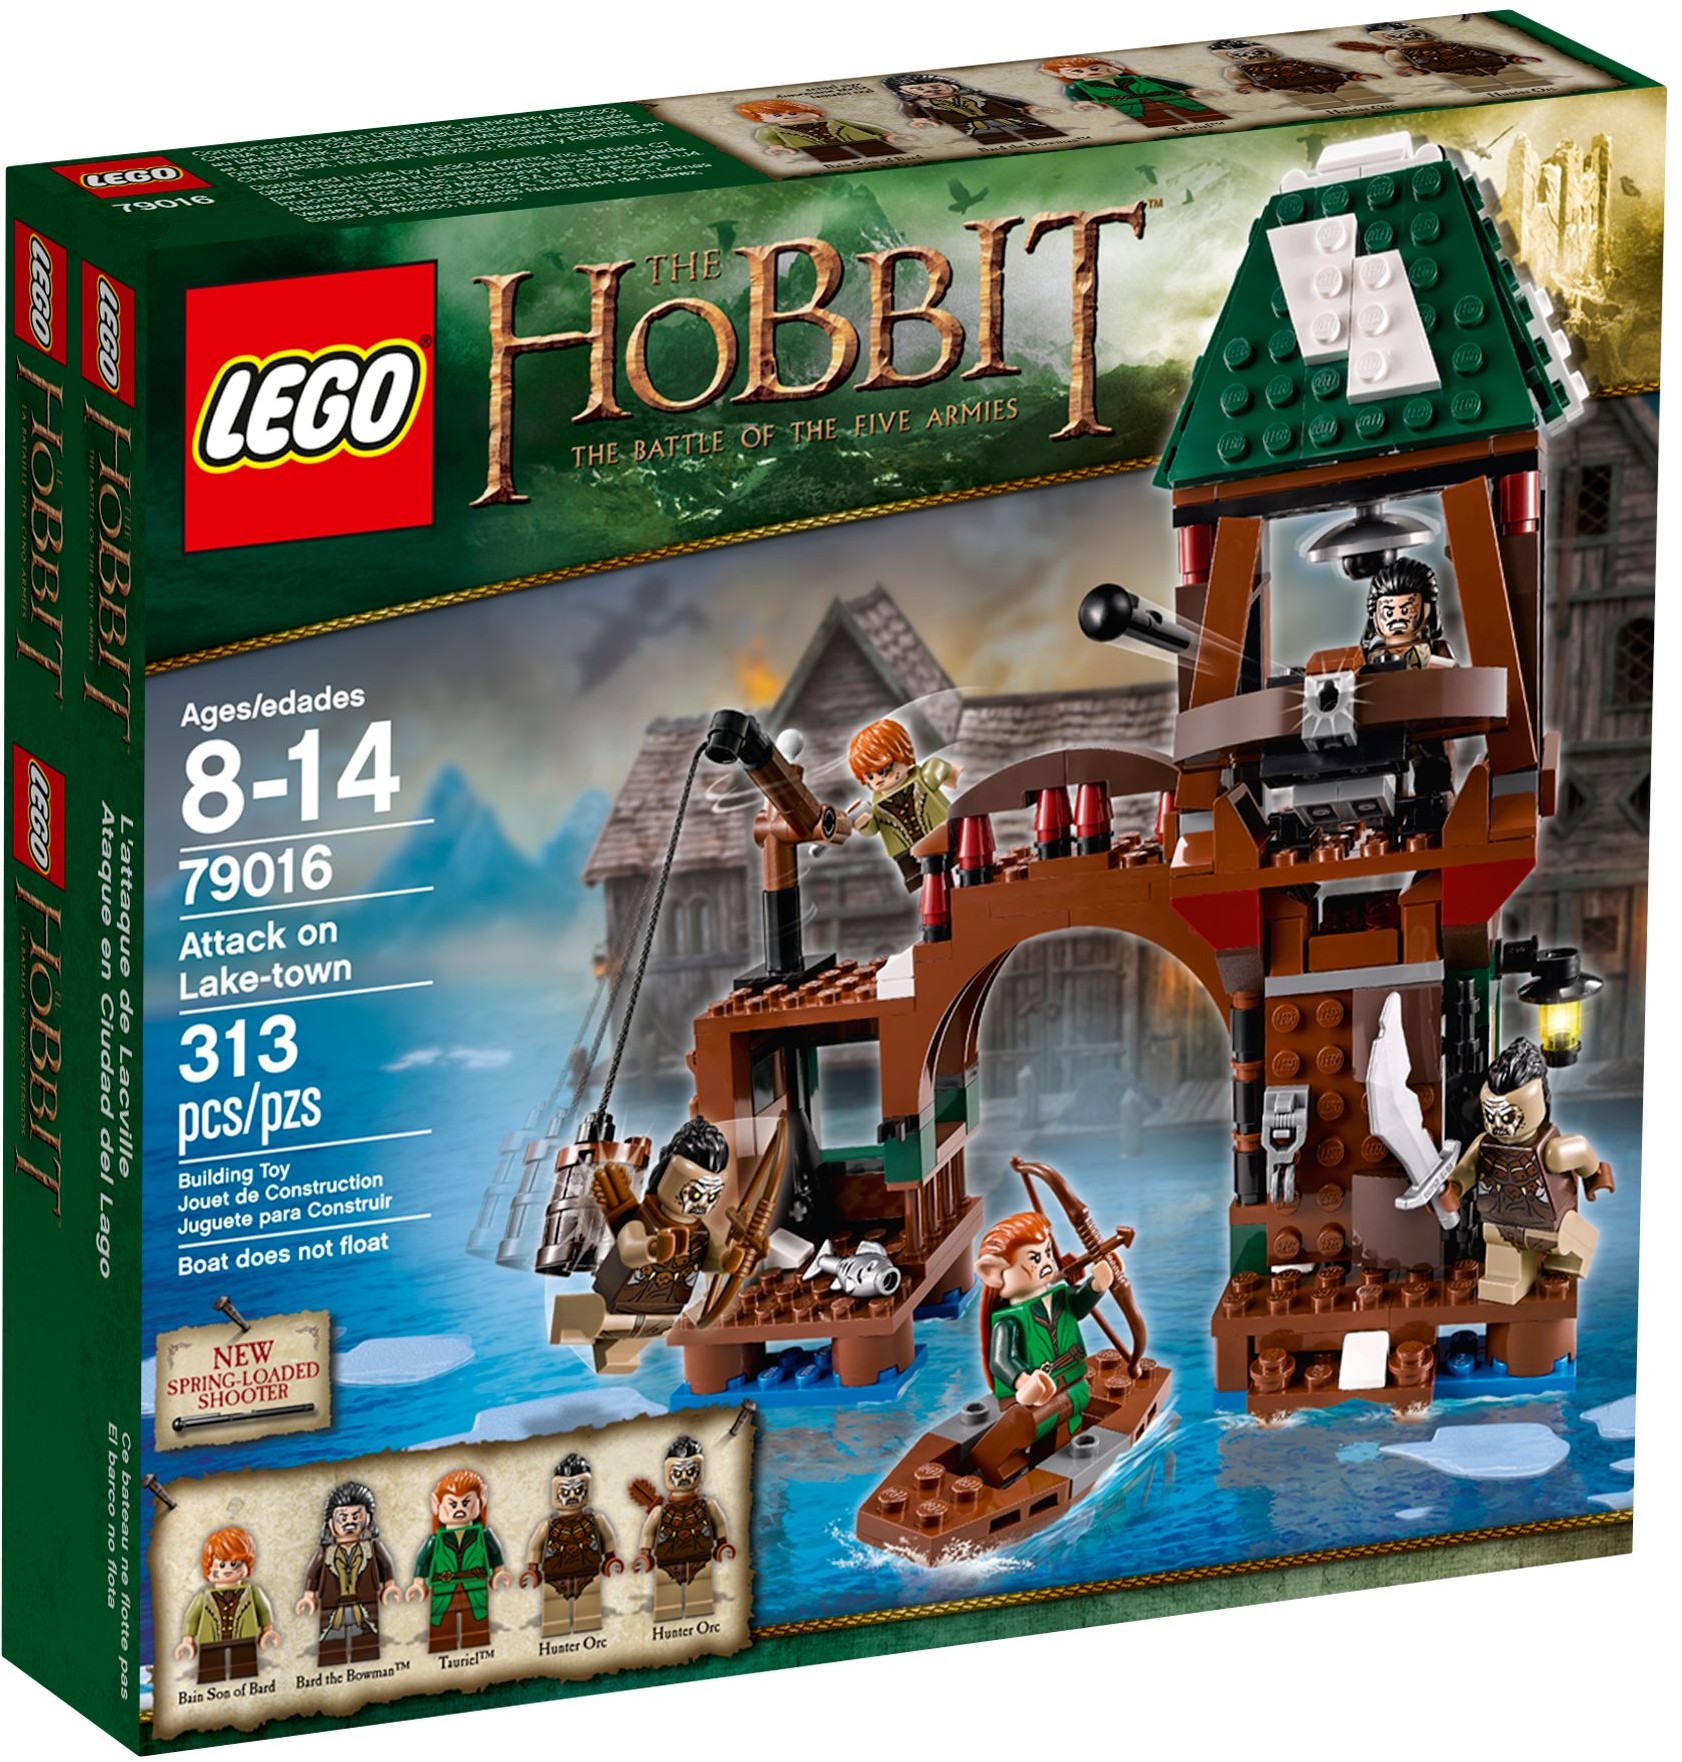 LEGO Der Herr der Ringe Hobbit 79016 Angriff auf Seestadt komplett mit BA 